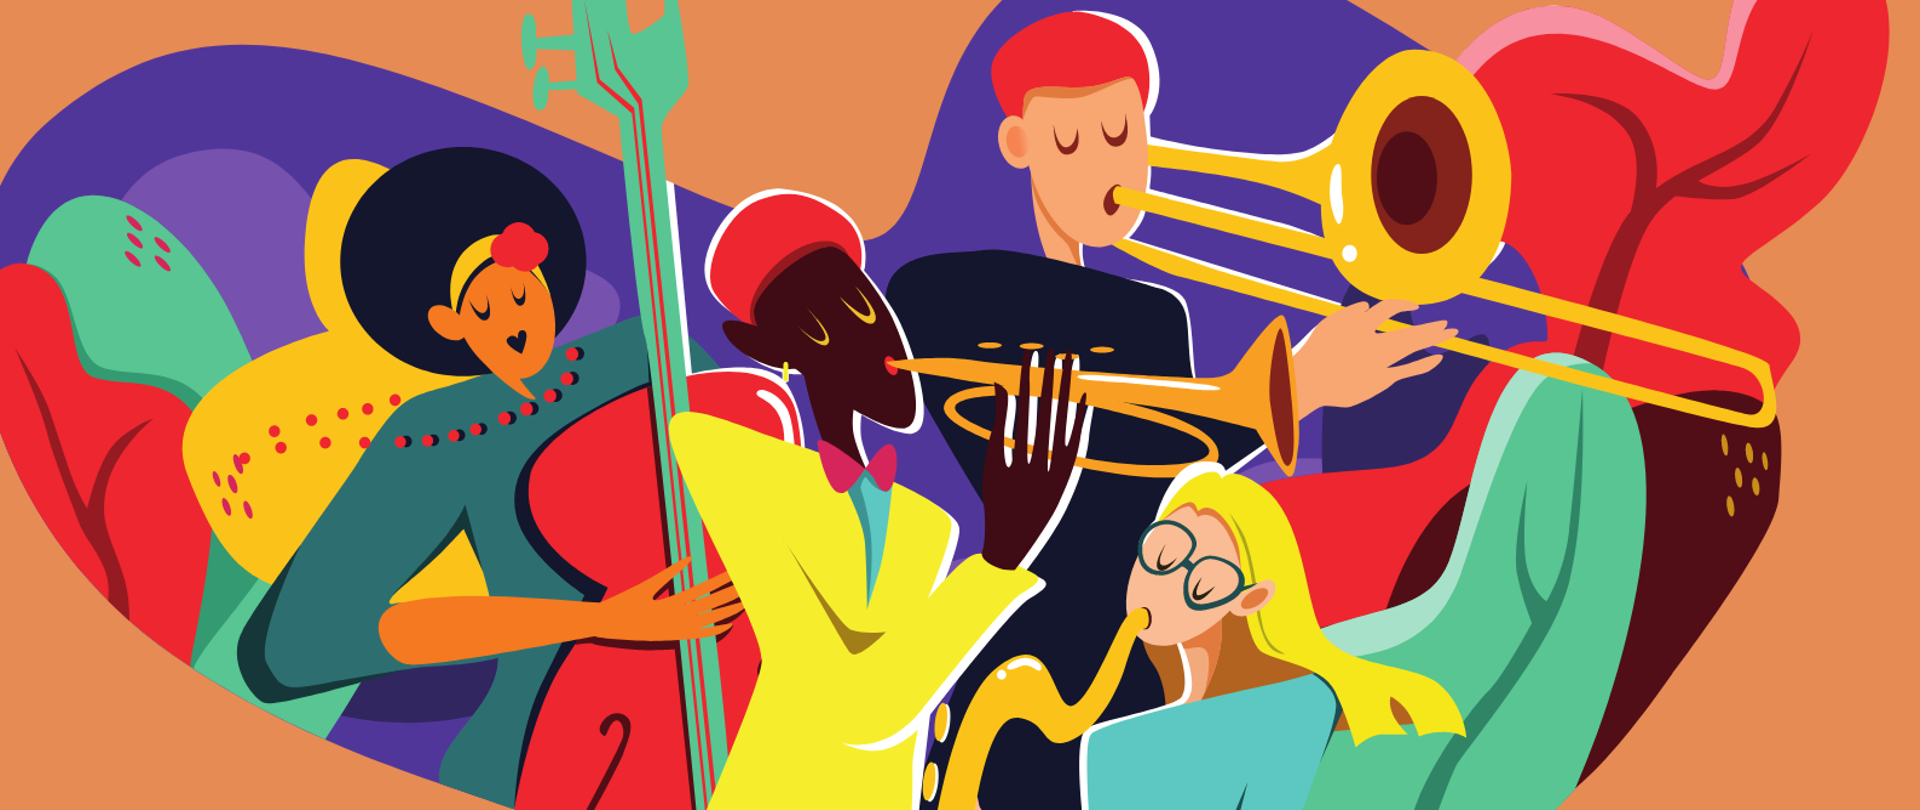 kolorowy plakat zapraszający na audycję muzyczną o muzyce jazzowej. Na pomarańczowym tle grafika przedstawiająca muzyków oraz napisy w kolorze czarnym i białym.